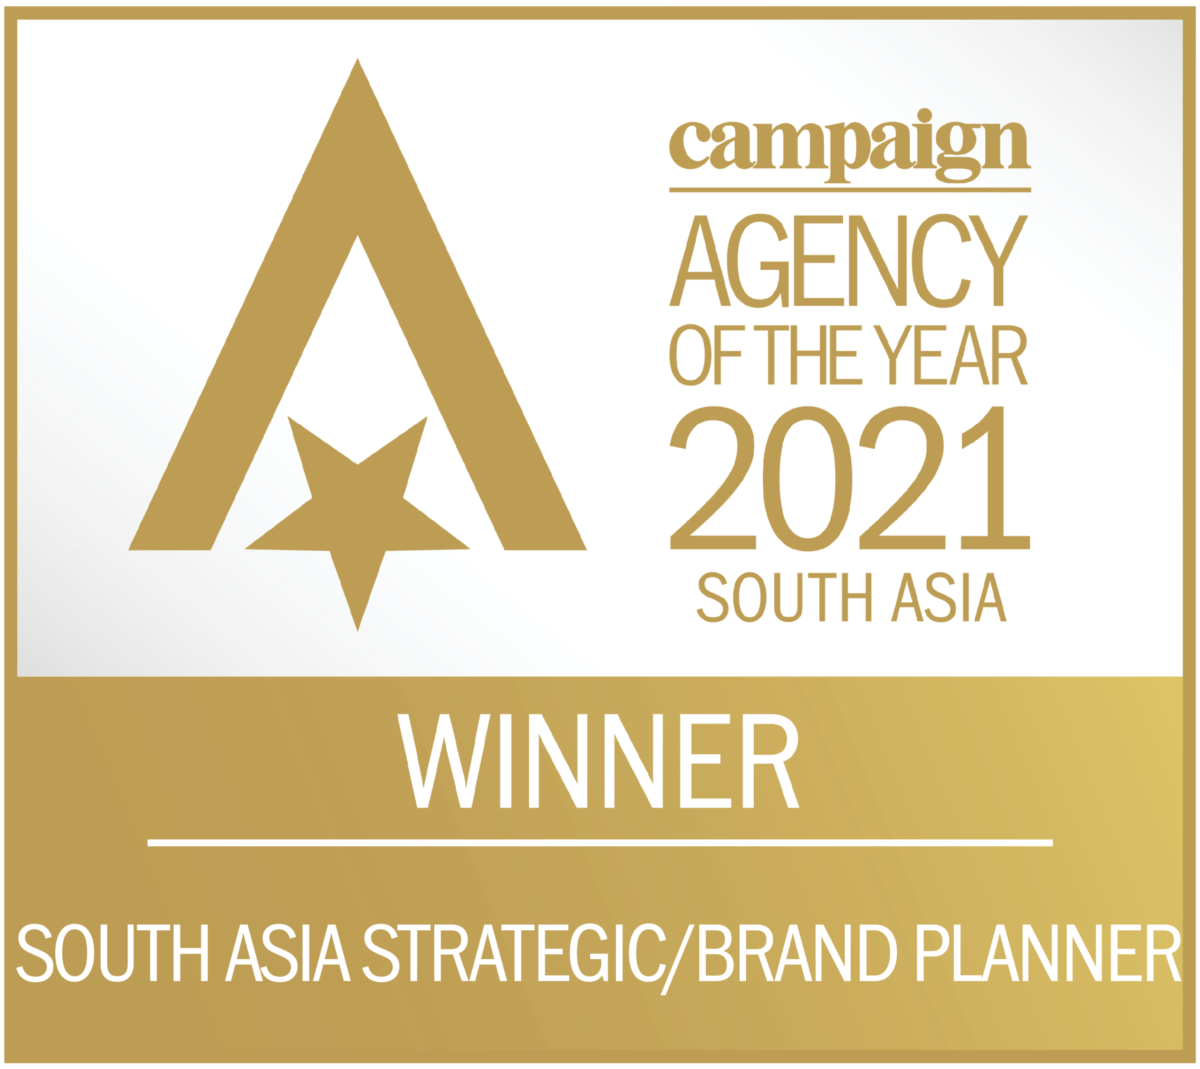 South Asia Strategic Brand Planner Winner